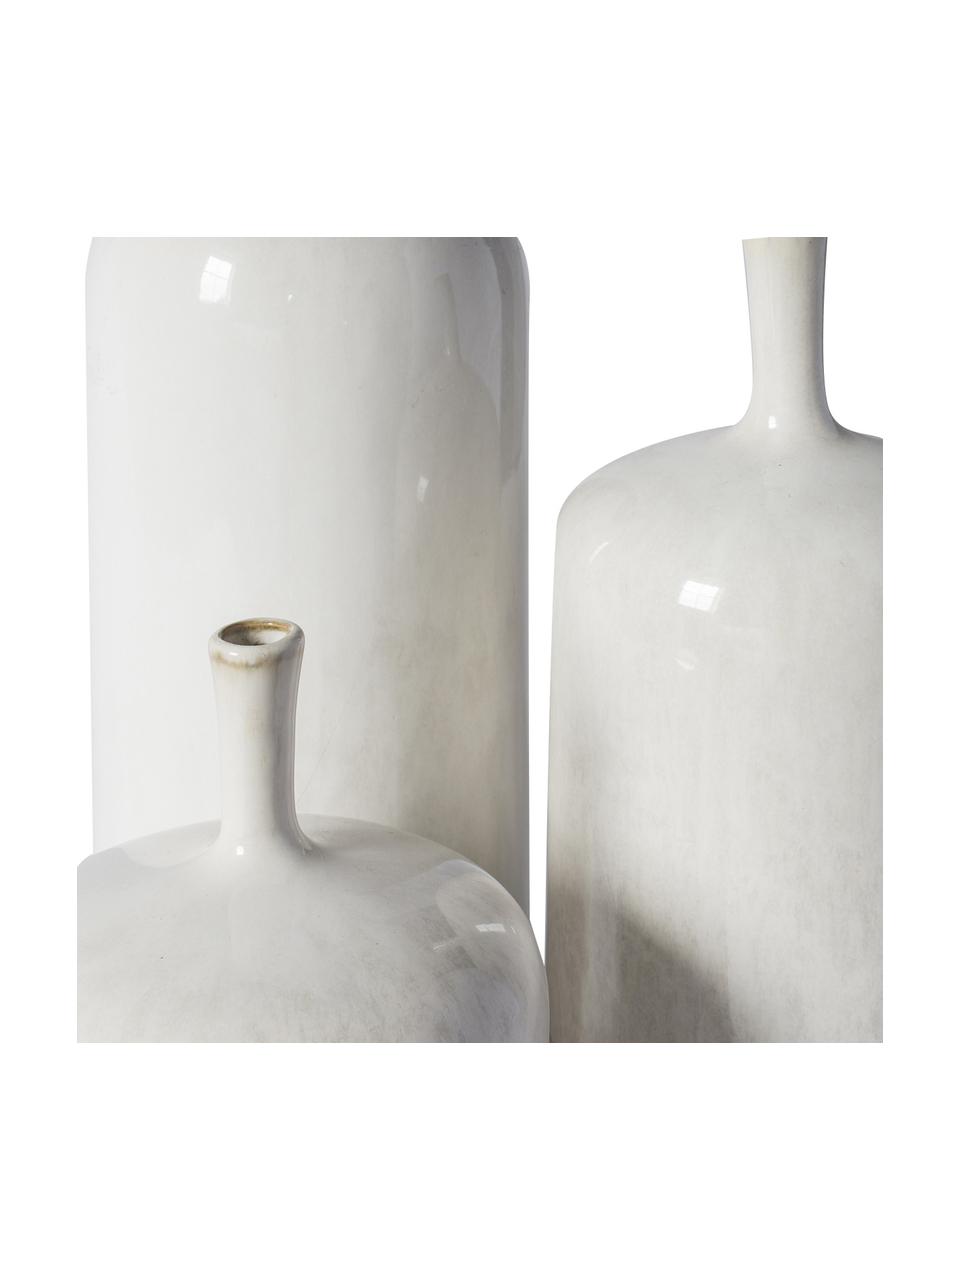 Vases bouteilles Vormark, 3 élém., Céramique, Blanc, Lot de différentes tailles